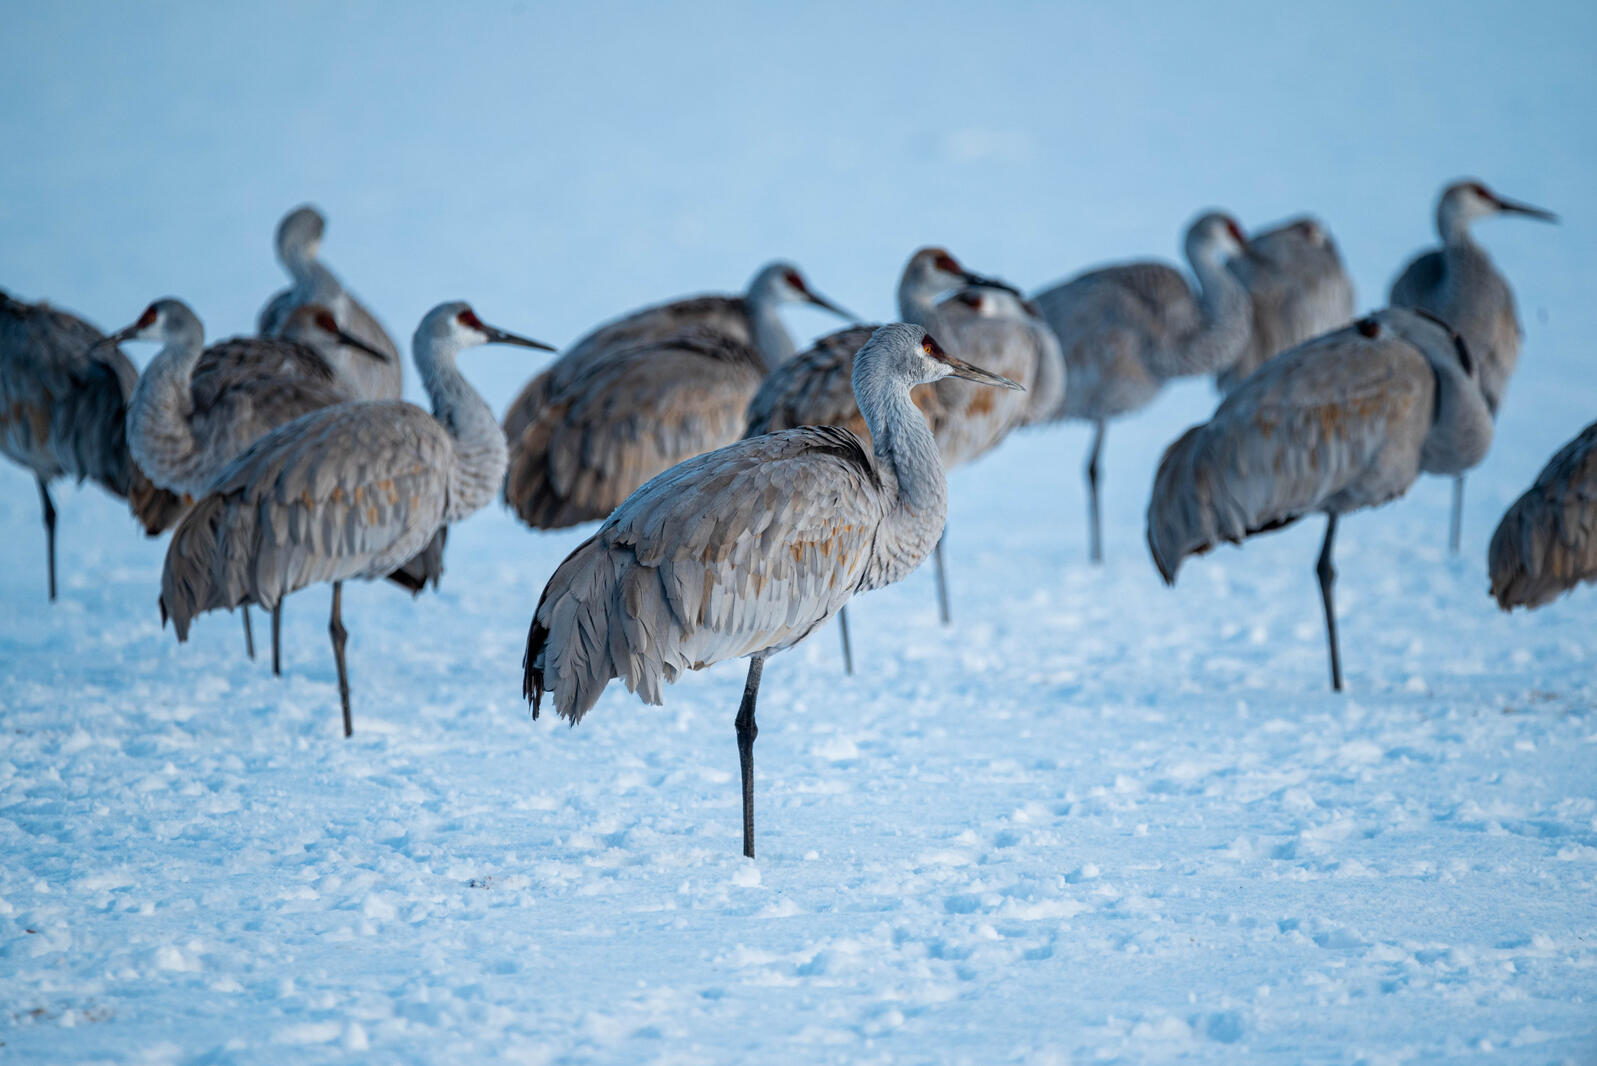 Cranes in Snow